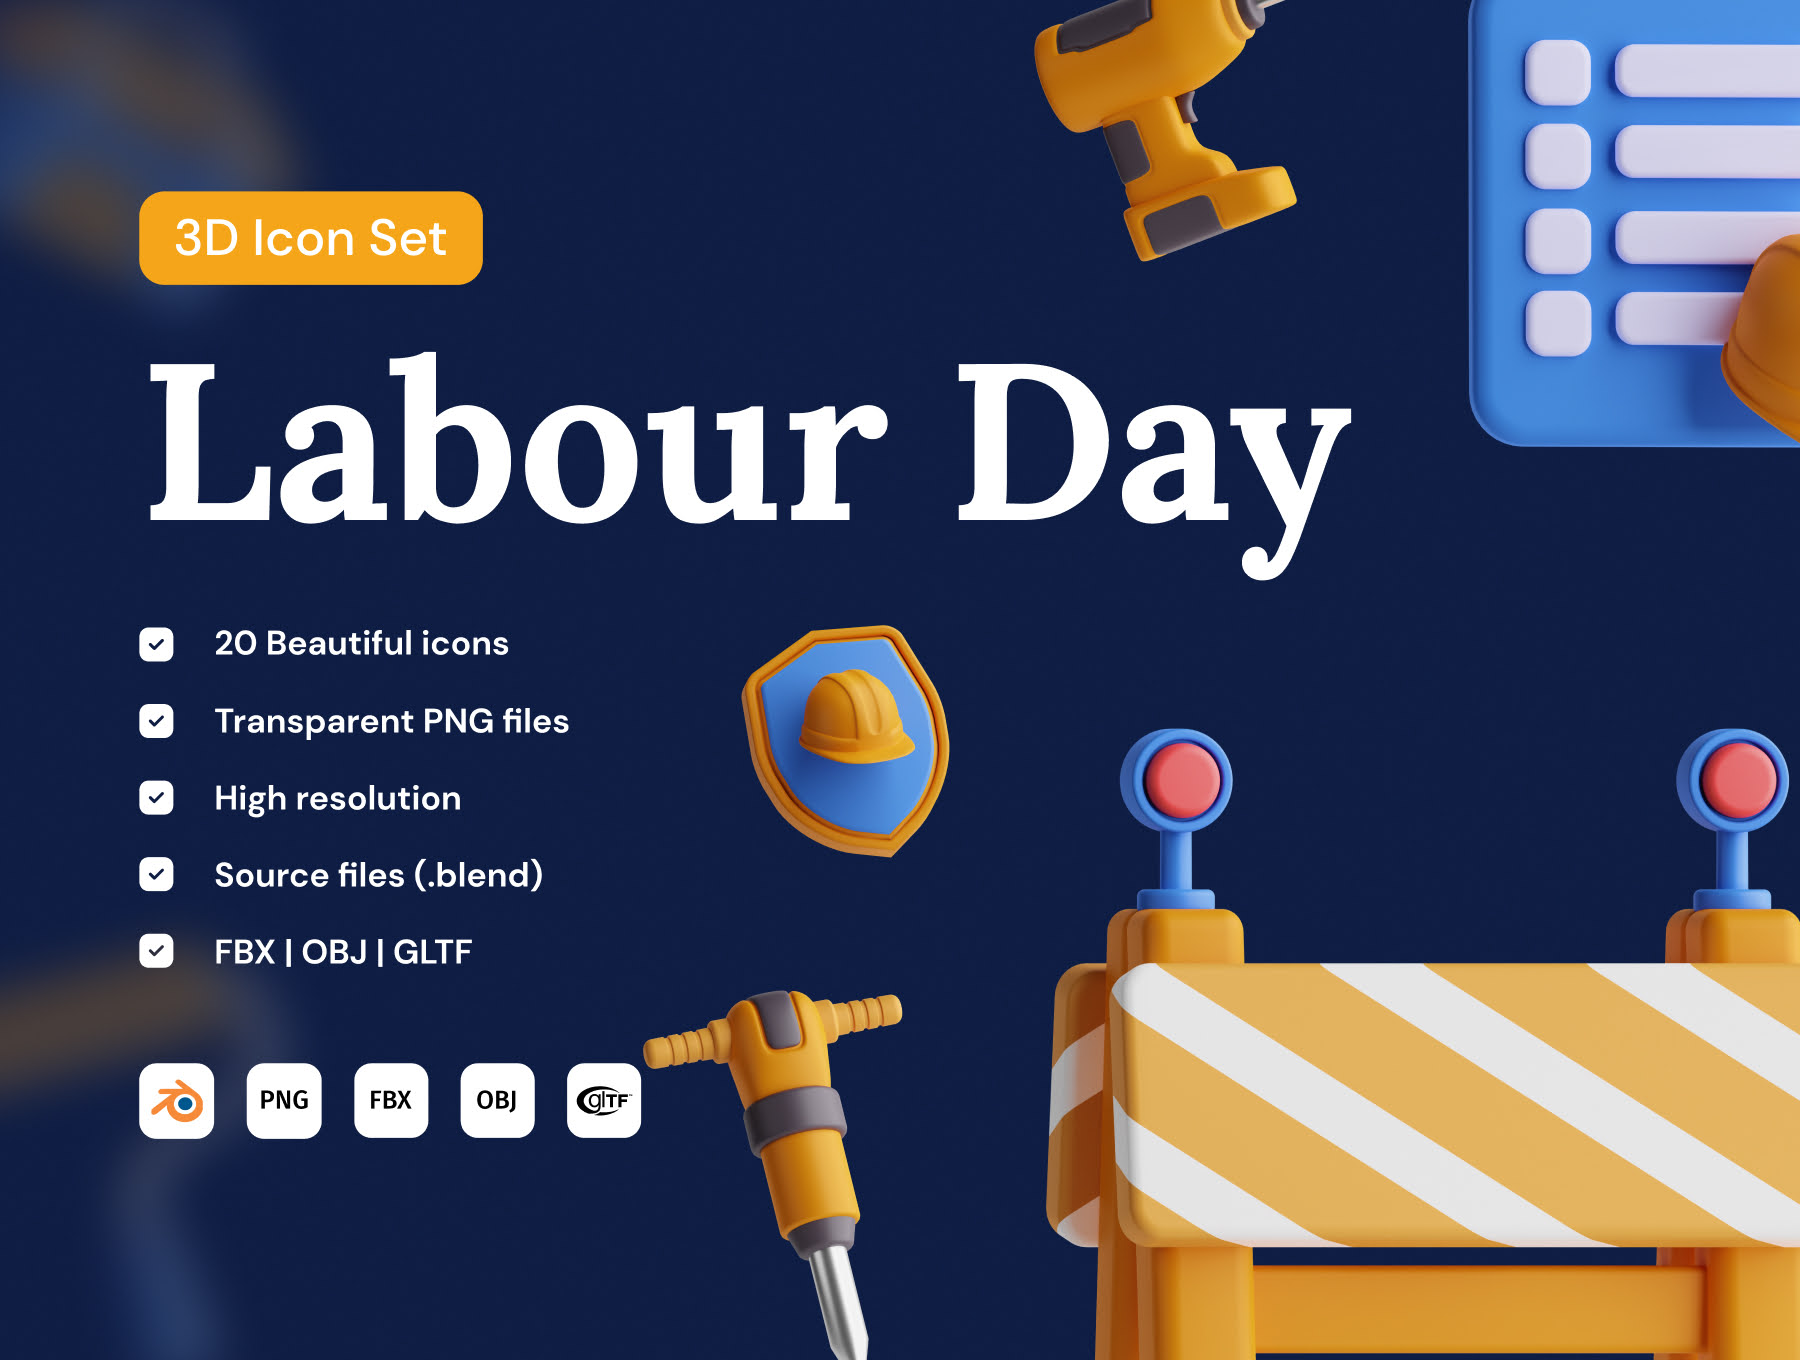 劳动节3D图标套装 Labour Day 3D Icon Set blender, fbx, obj, gltf格式-3D/图标-到位啦UI